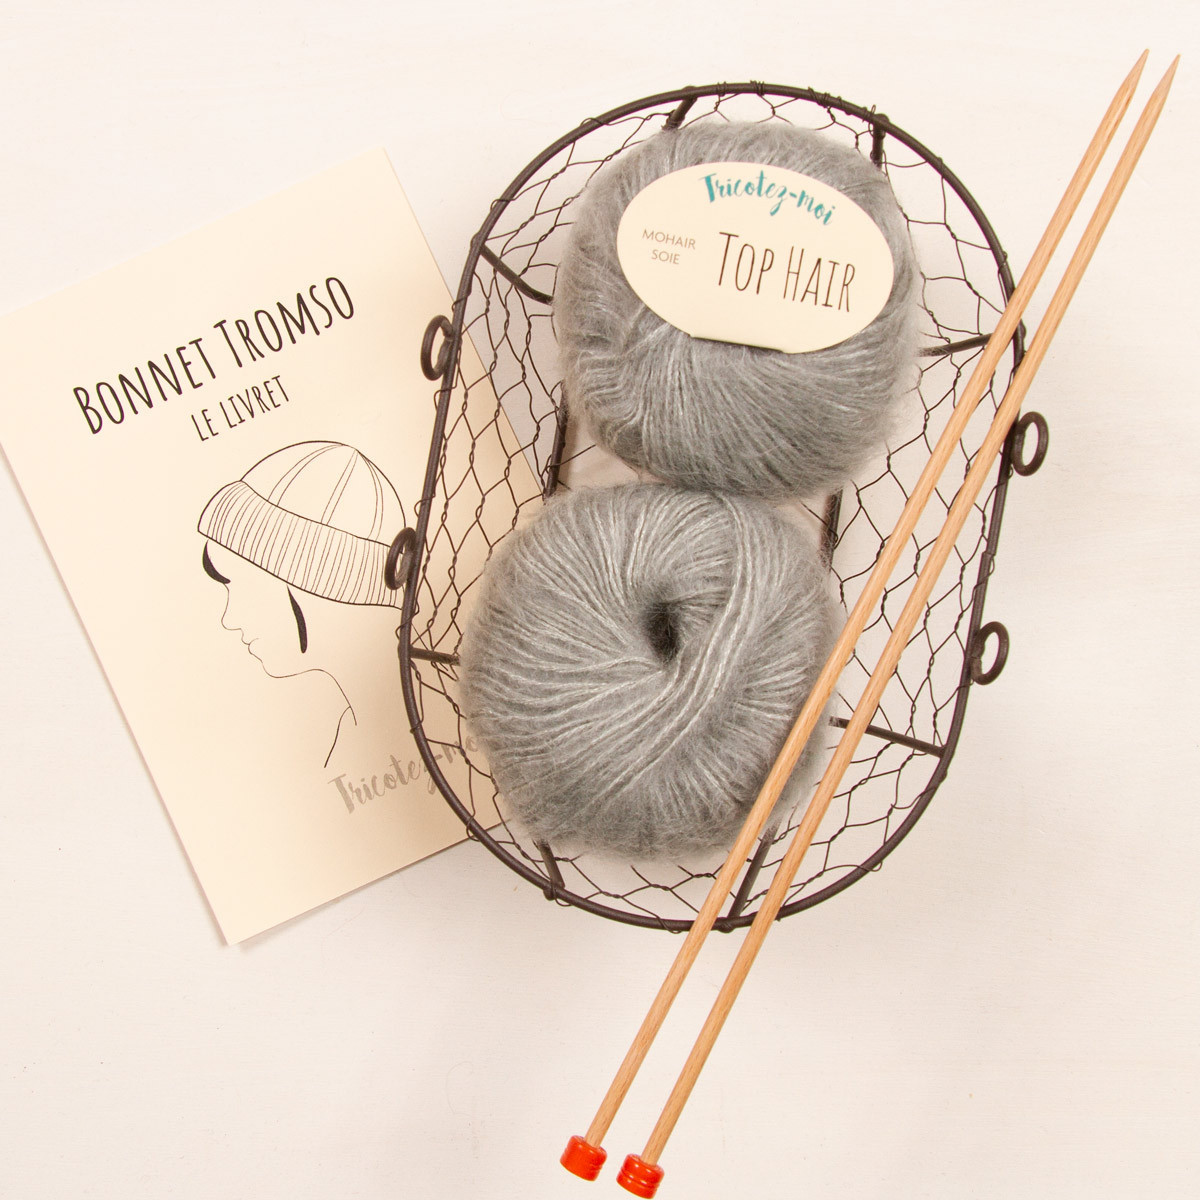 Bonnet Tromso à tricoter